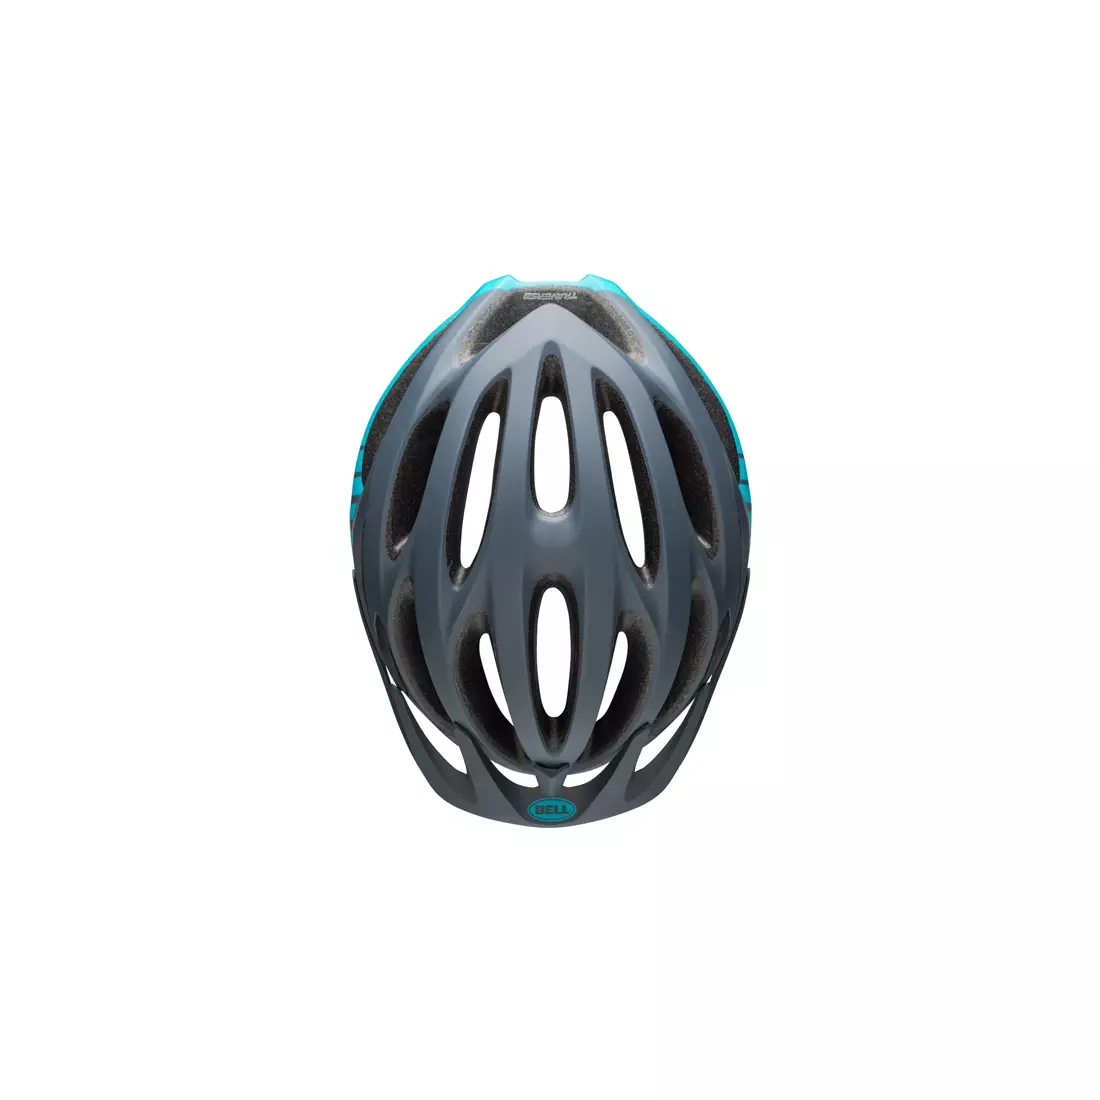 BELL MTB TRAVERSE BEL-7087810 matte lead tropic bicycle helmet